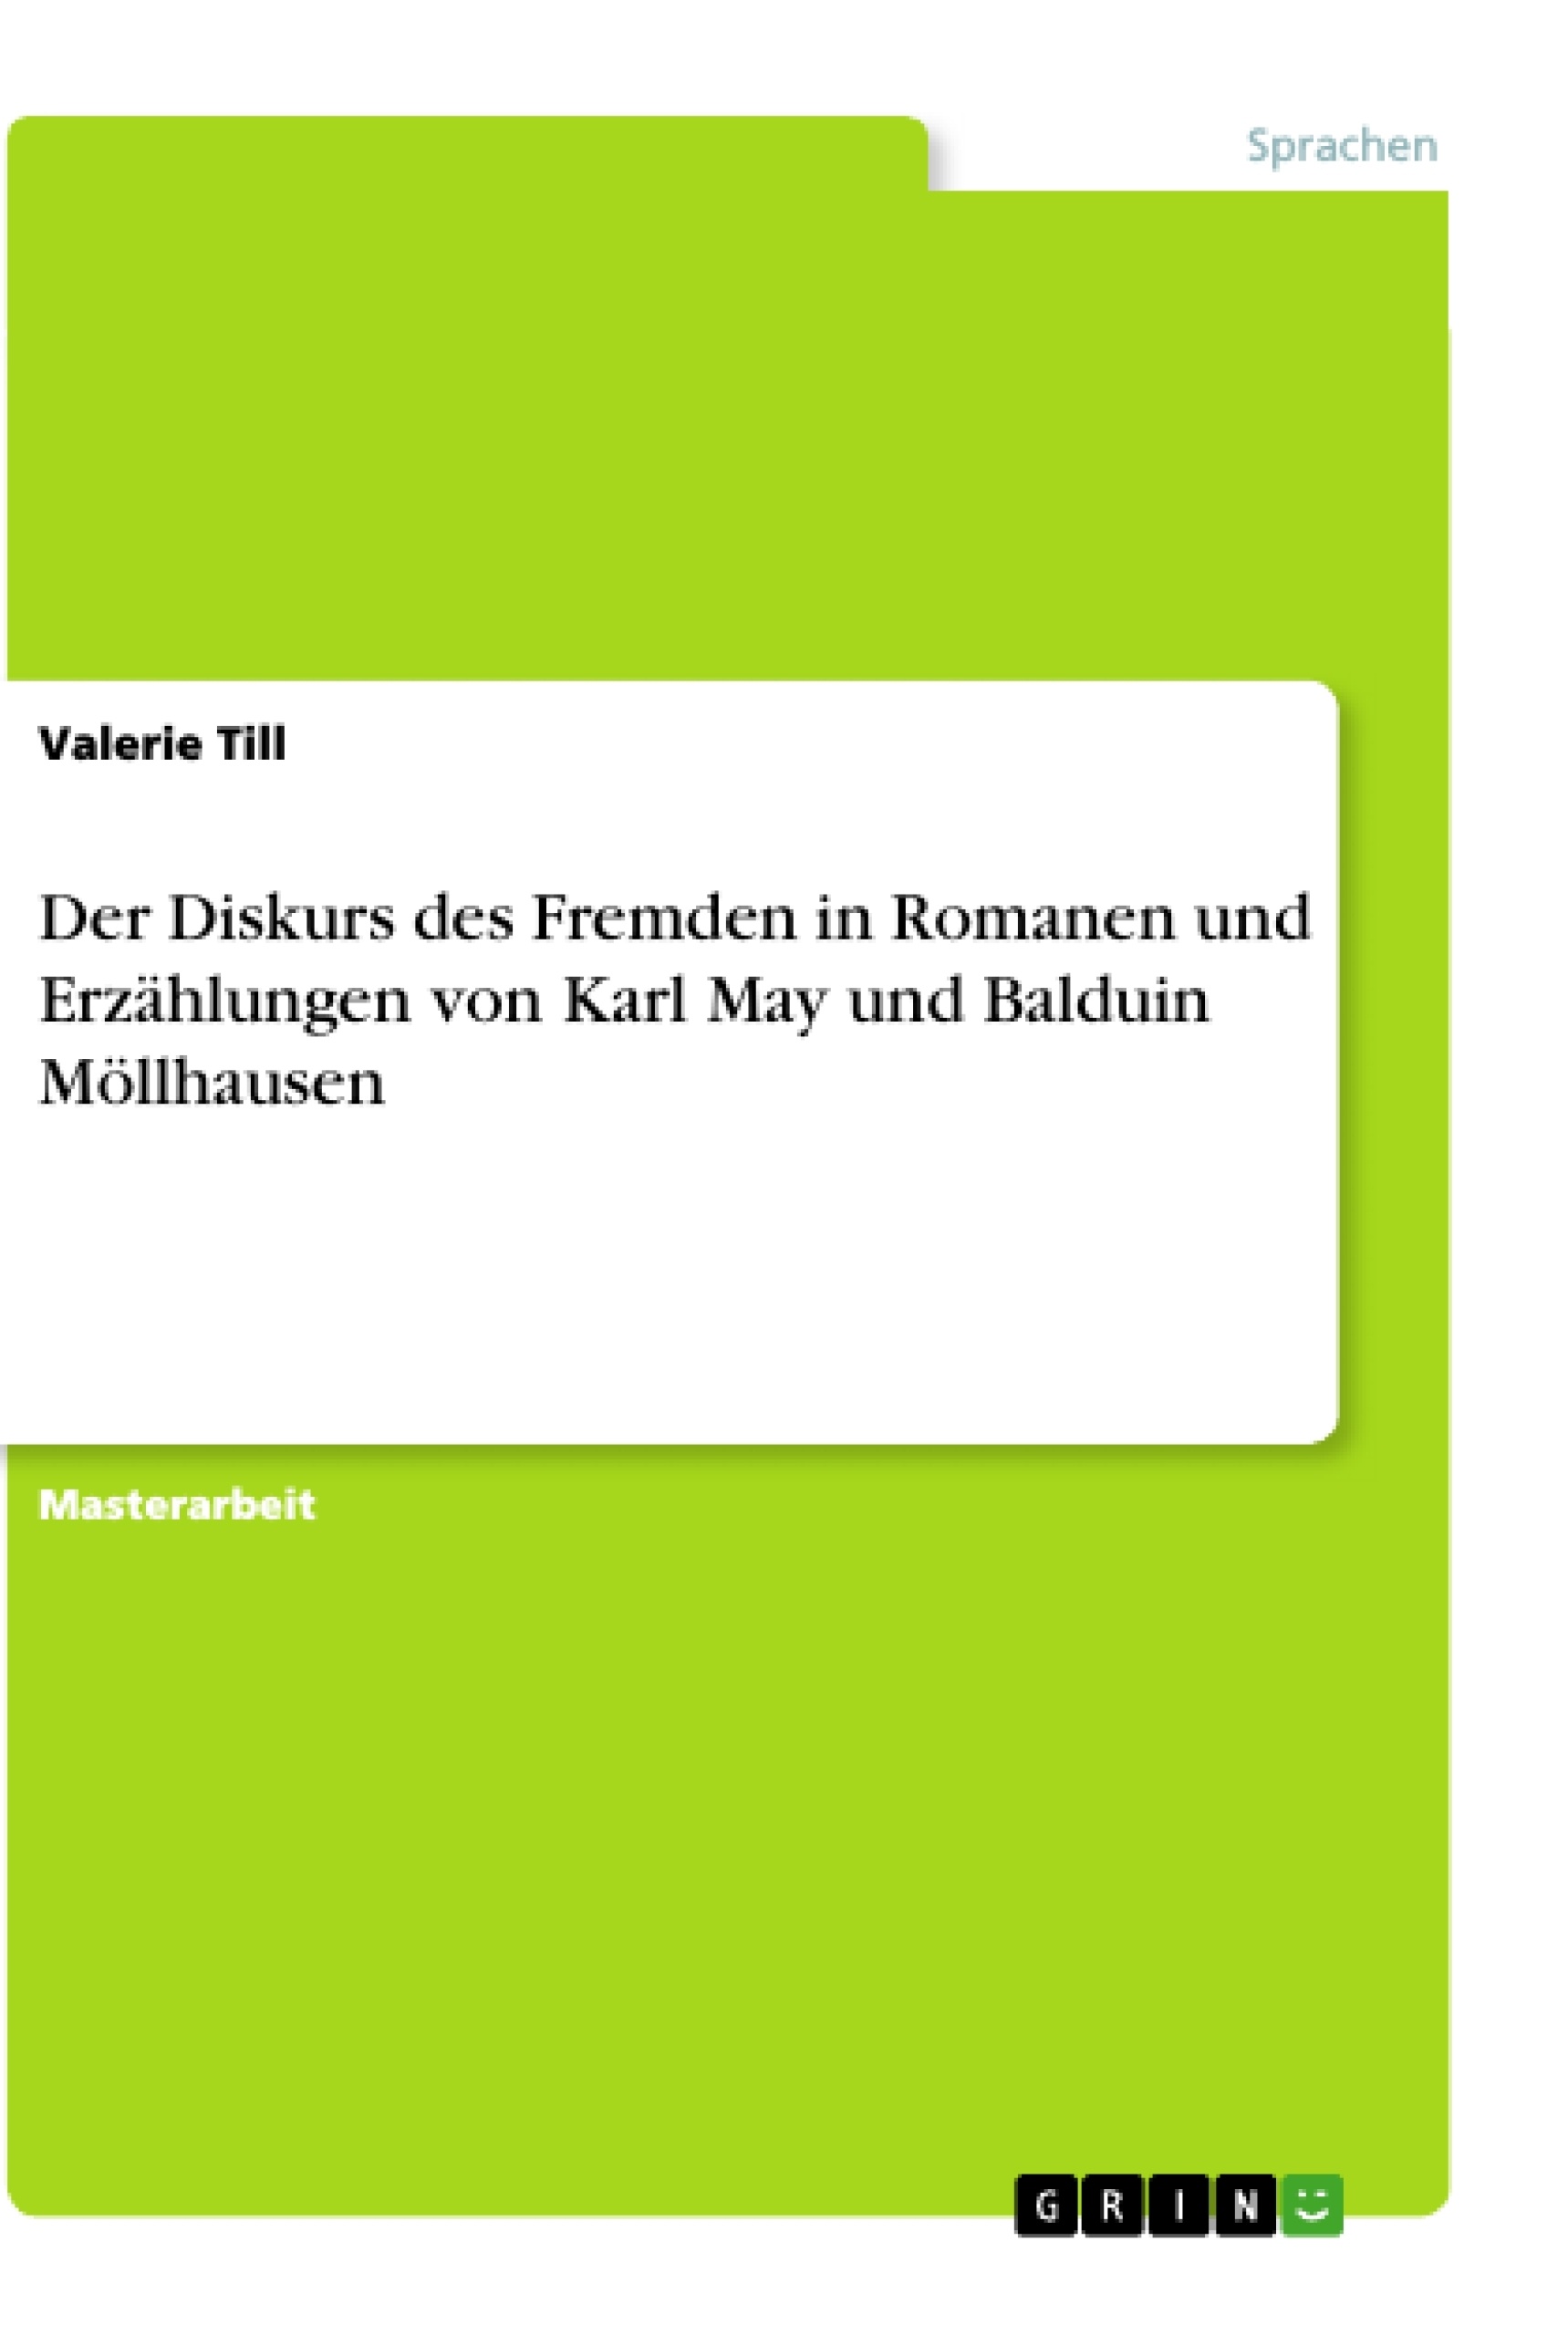 Title: Der Diskurs des Fremden in Romanen und Erzählungen von Karl May und Balduin Möllhausen